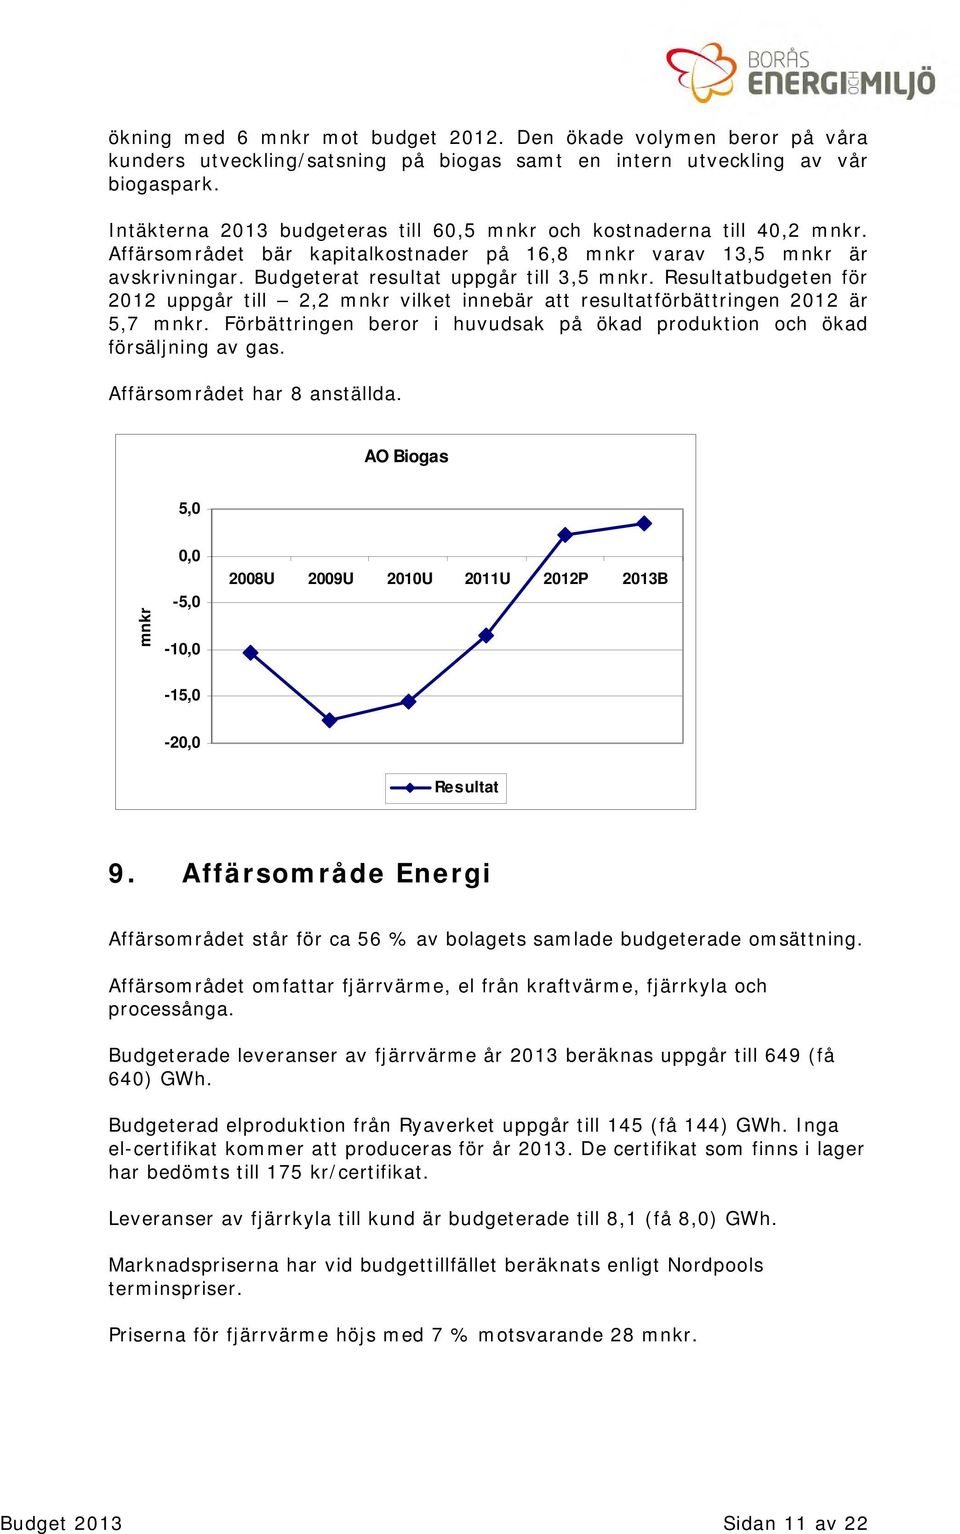 Resultatbudgeten för 2012 uppgår till 2,2 mnkr vilket innebär att resultatförbättringen 2012 är 5,7 mnkr. Förbättringen beror i huvudsak på ökad produktion och ökad försäljning av gas.